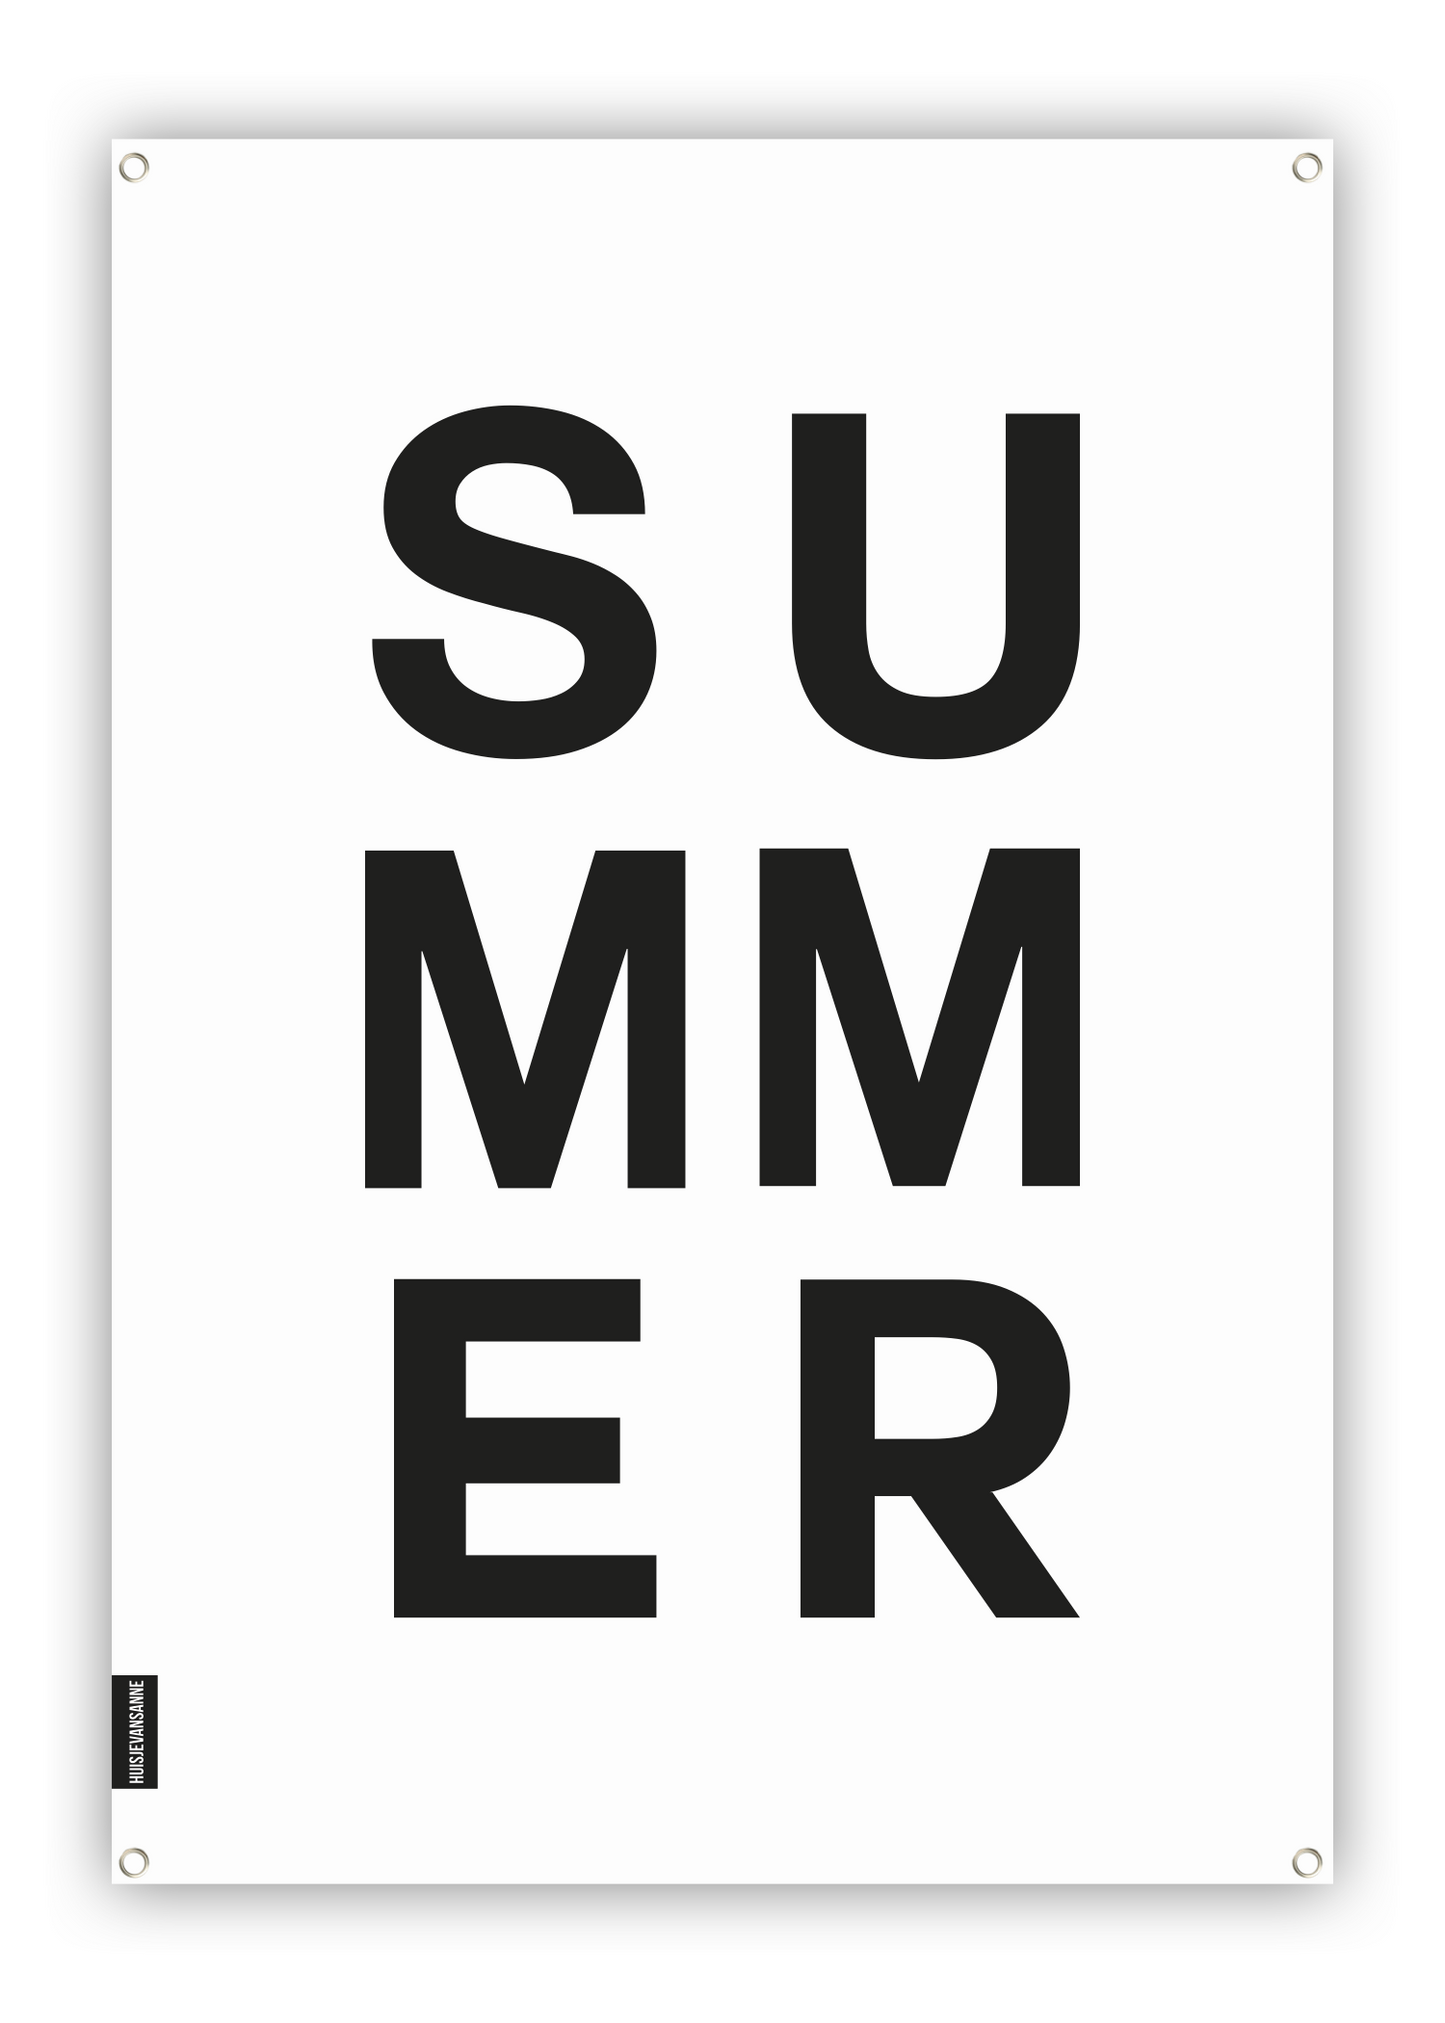 huisje van sanne tuinposter zwart wit met tekst summer